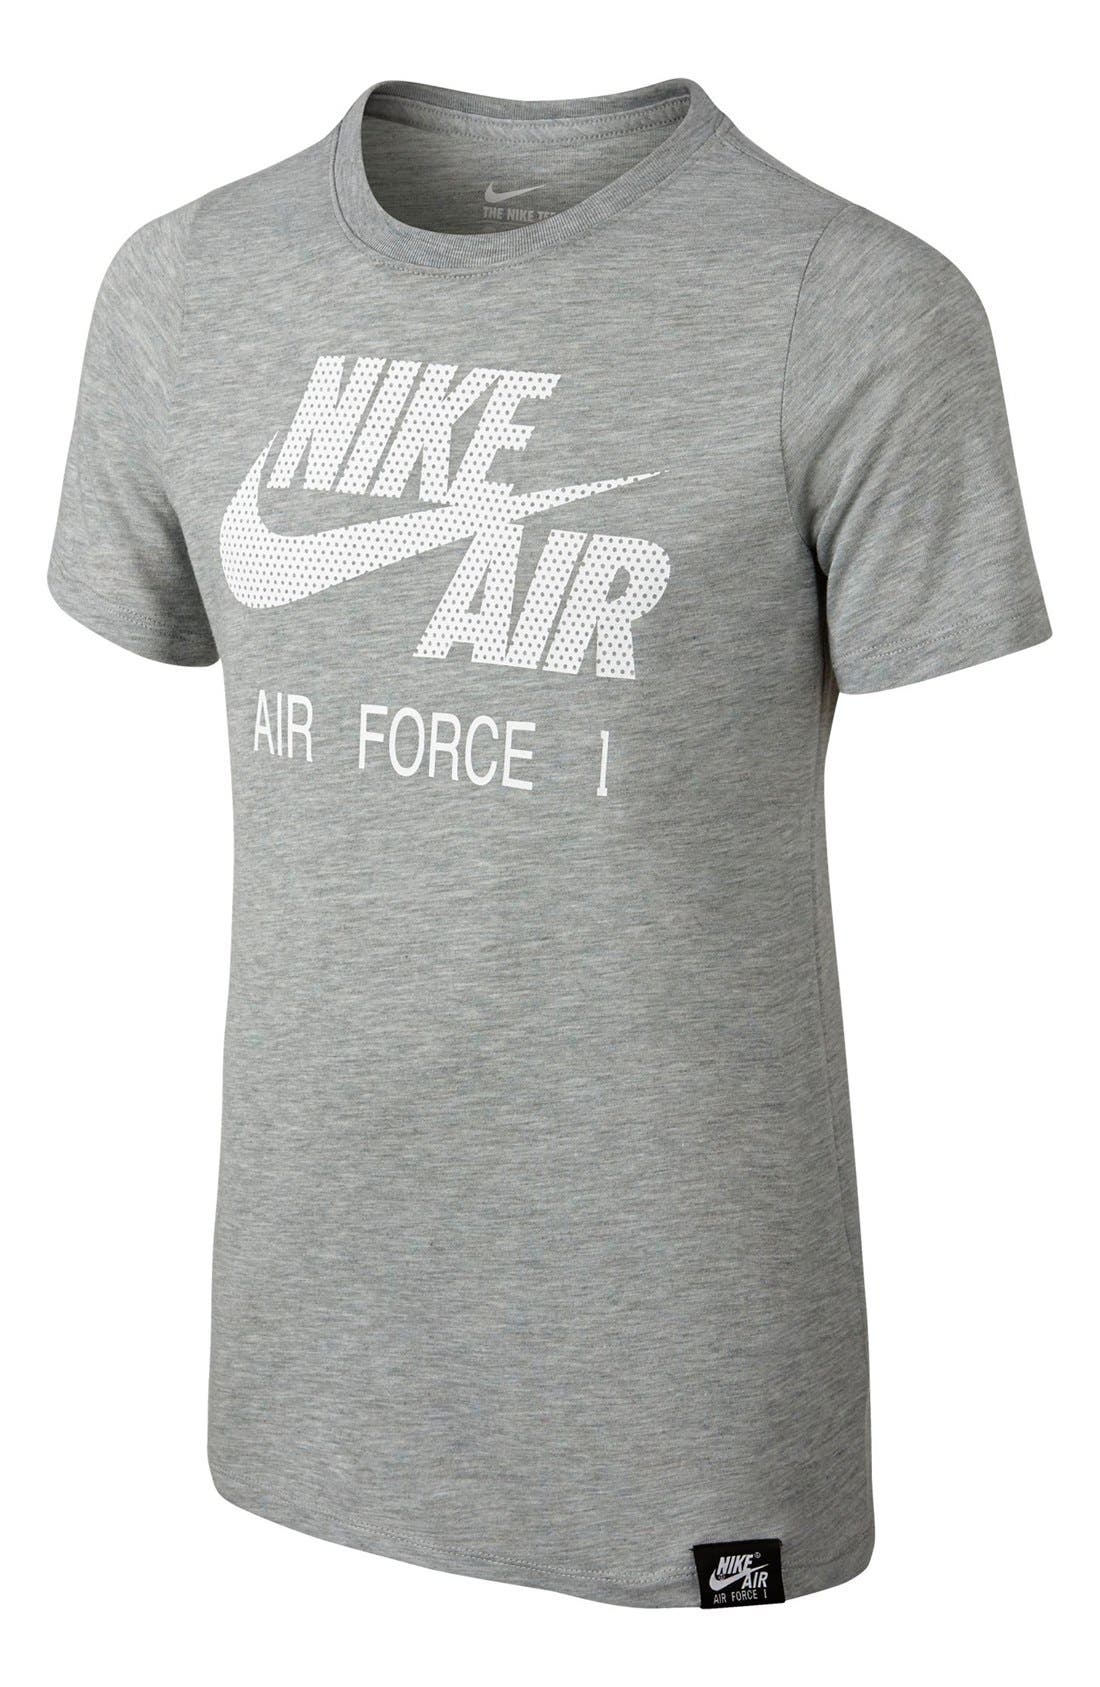 air force sweatshirt nike